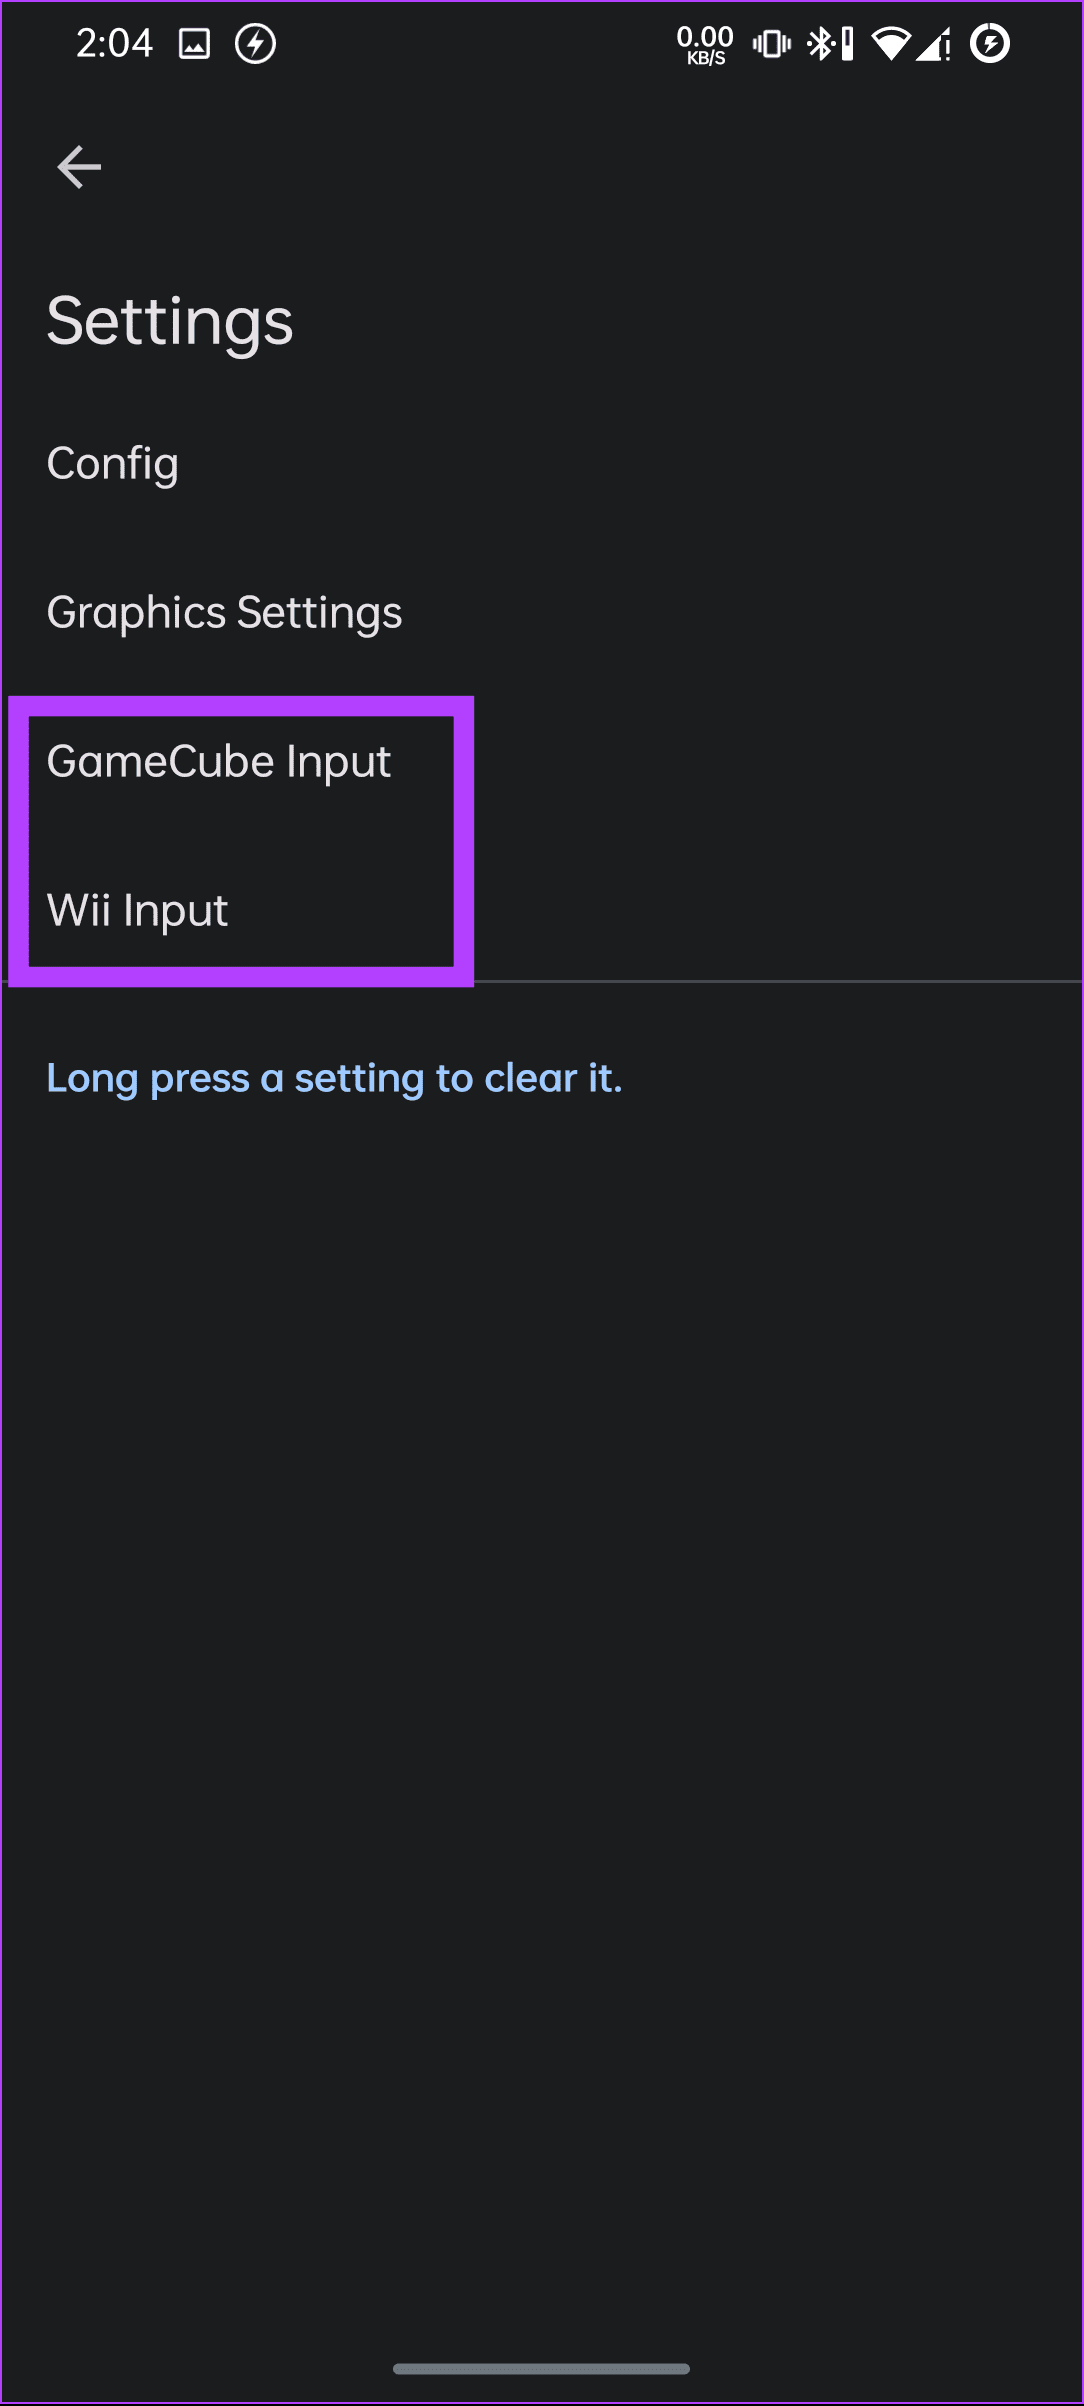 بین ورودی Gamecube یا Wii یکی را انتخاب کنید